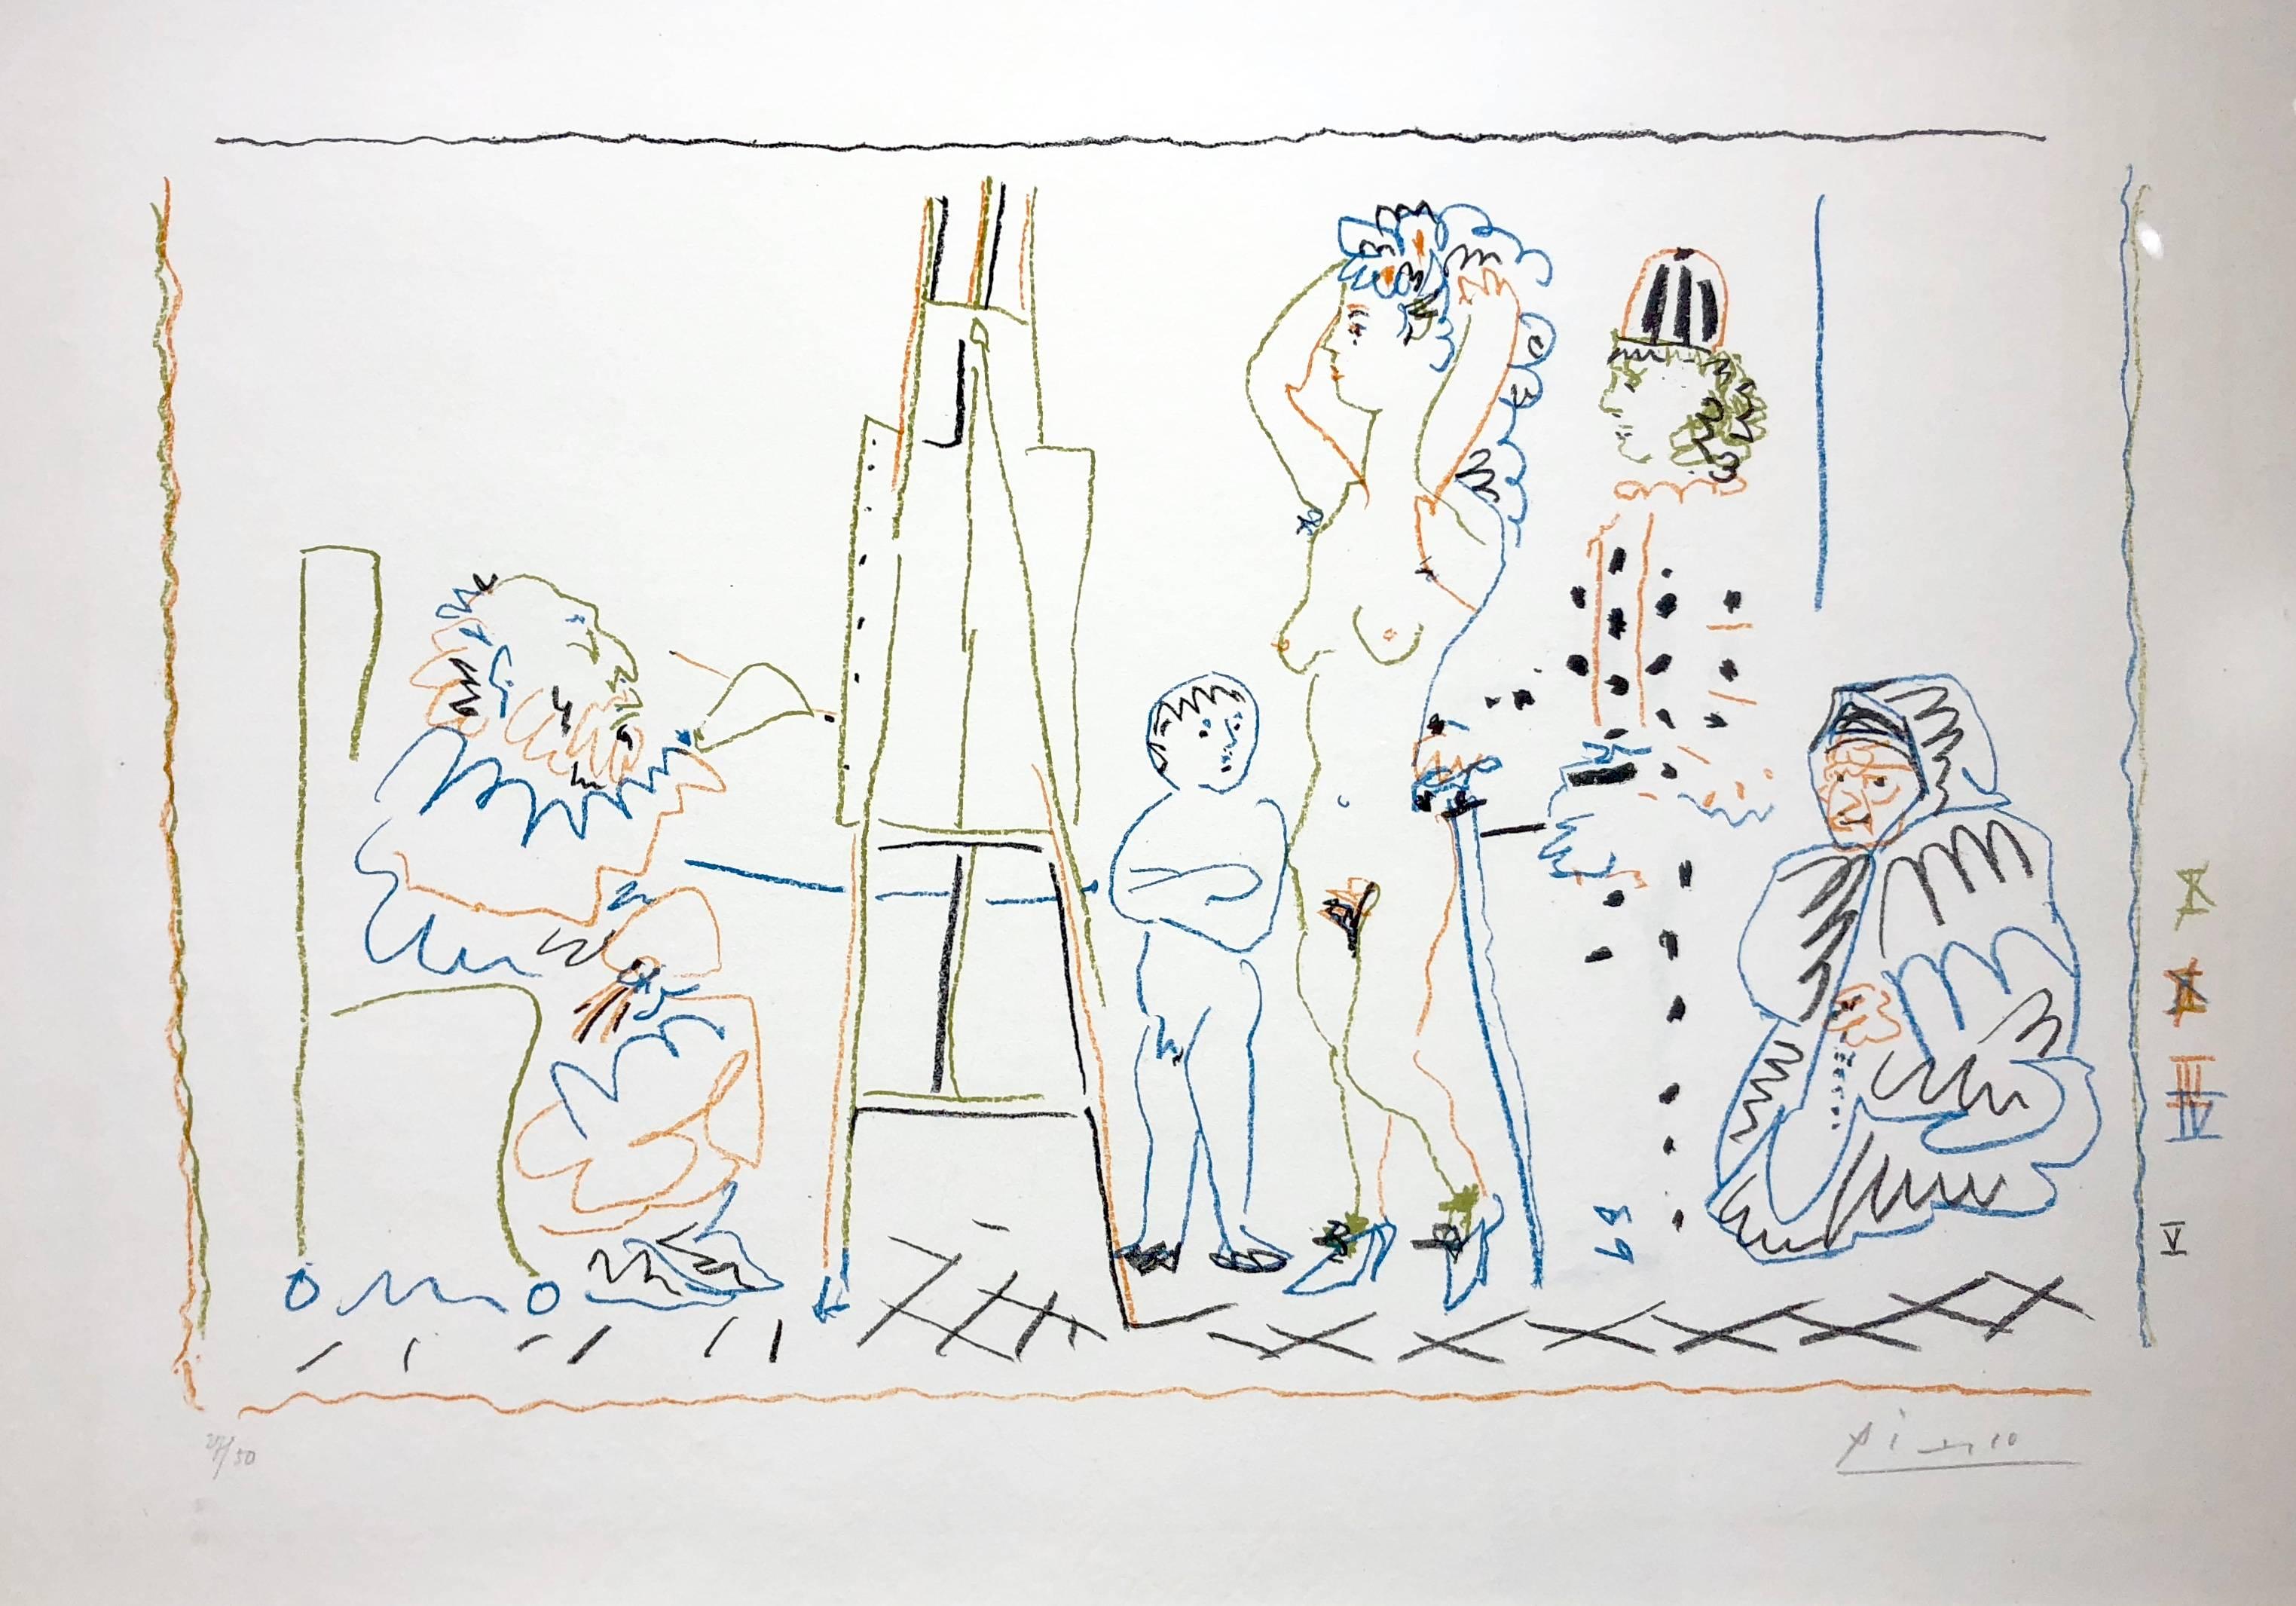 Pablo Picasso, L'Atelier du vieux peintre